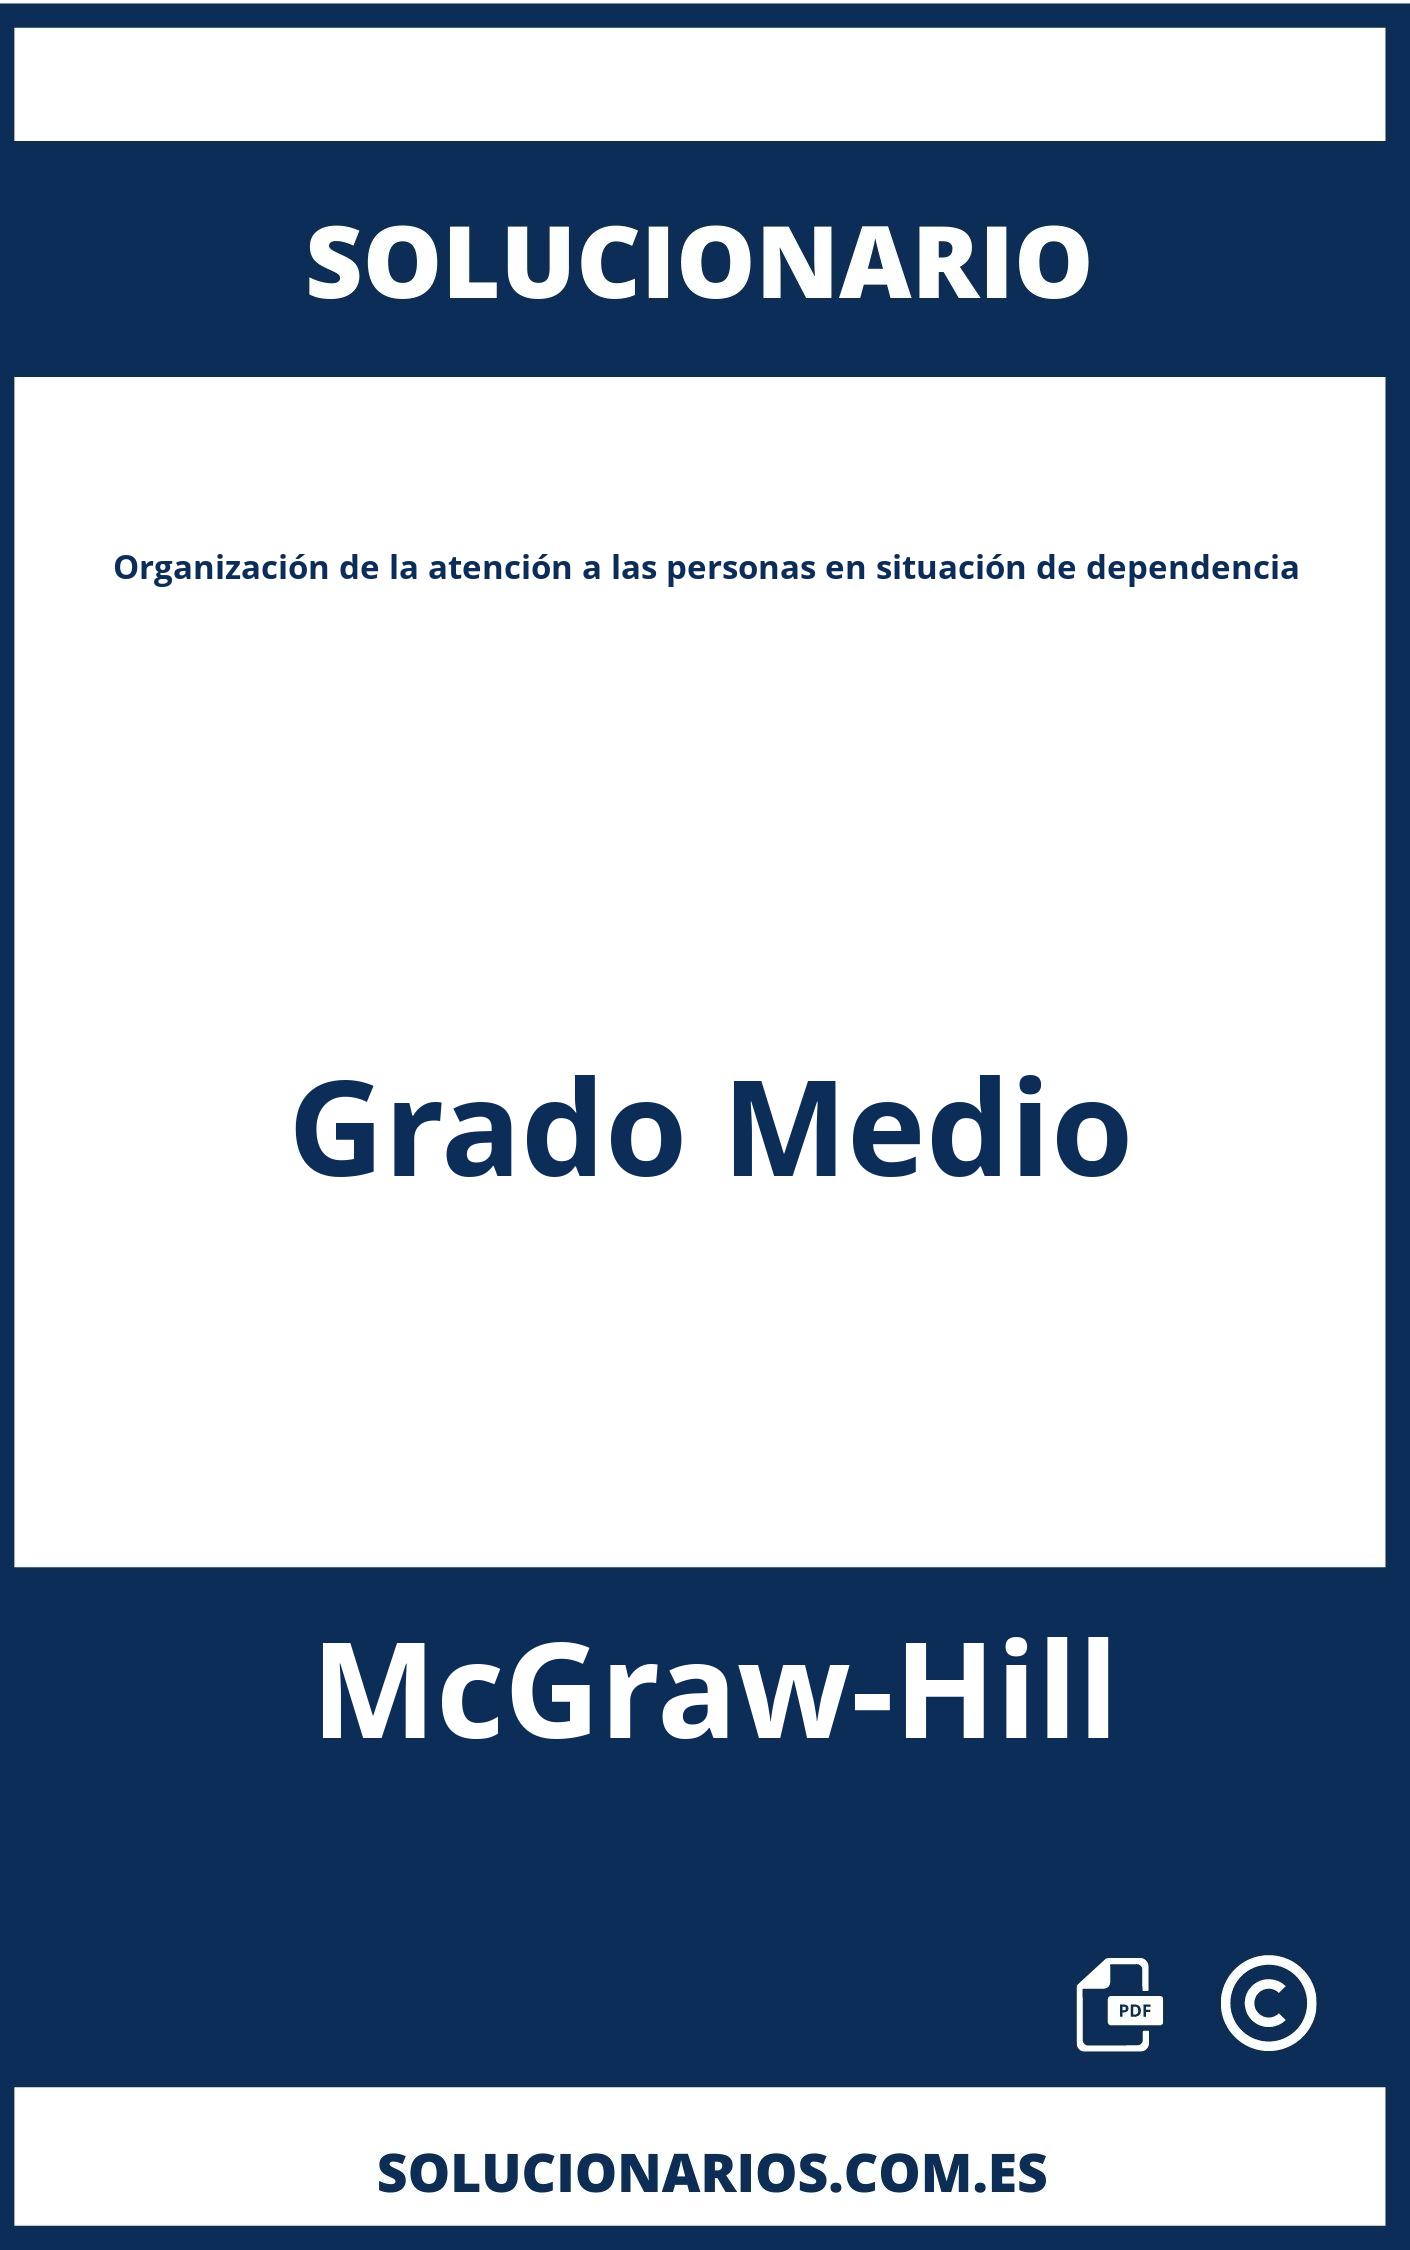 Solucionario Organización de la atención a las personas en situación de dependencia Grado Medio McGraw-Hill